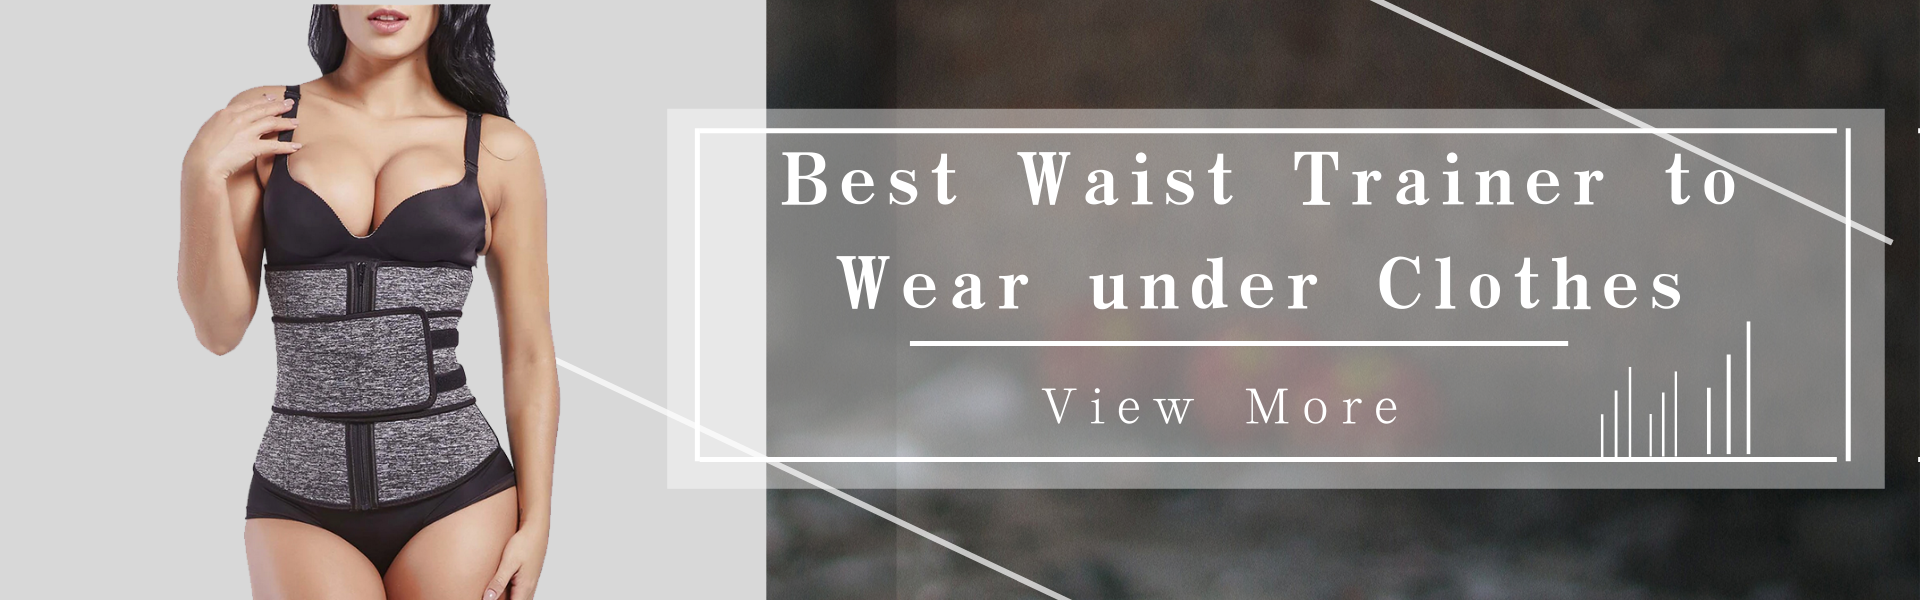 Best Waist Trainer to Wear under Clothes